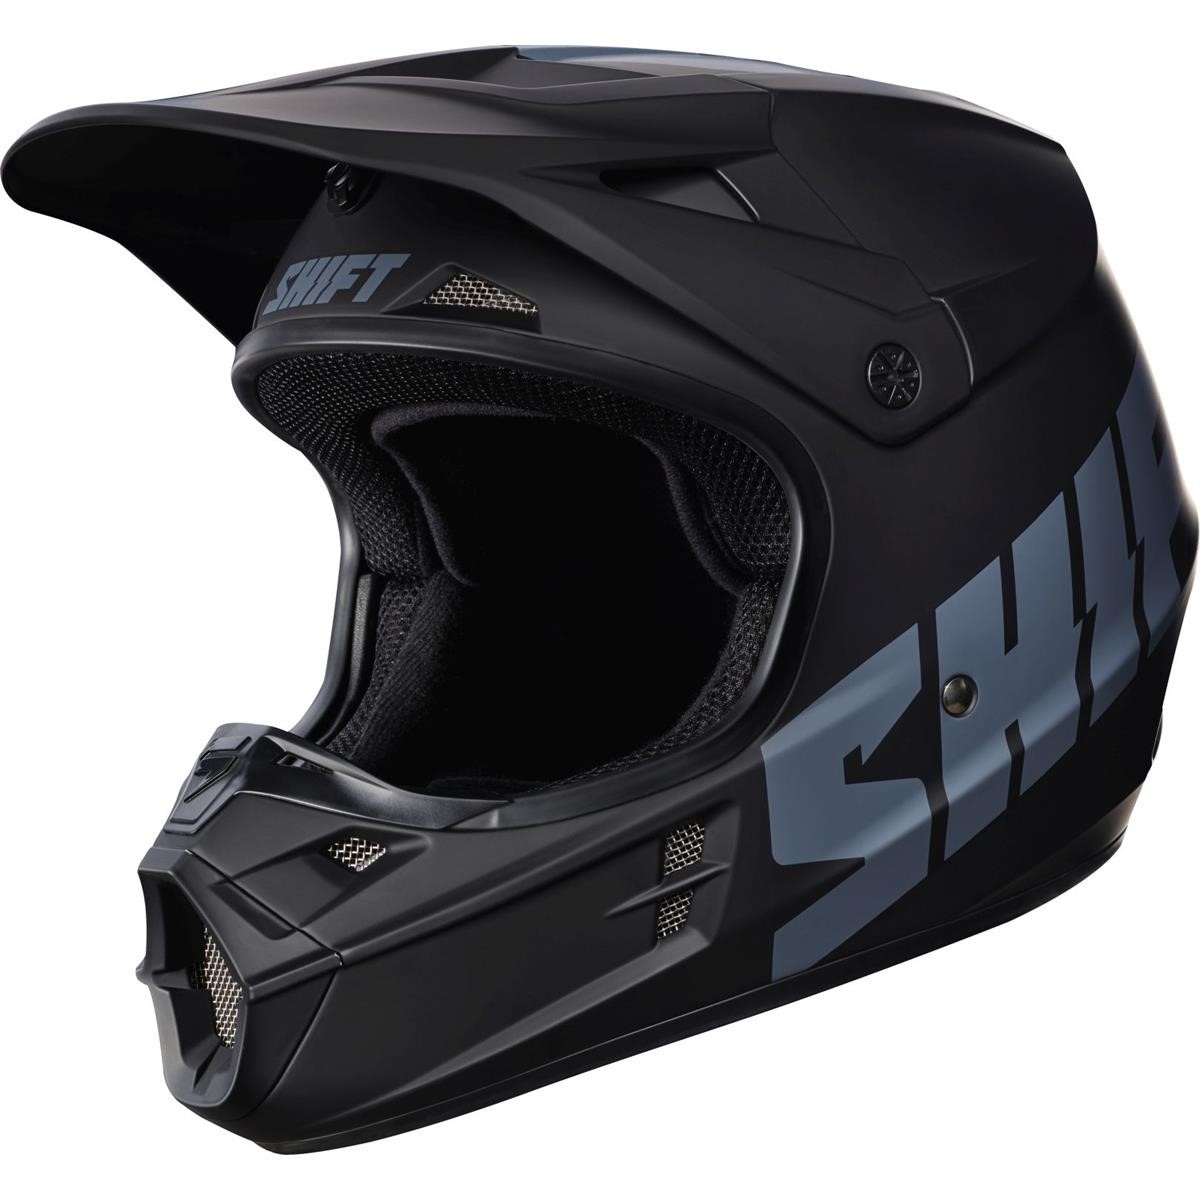 Shift Helm Whit3 Matt Schwarz - Solid